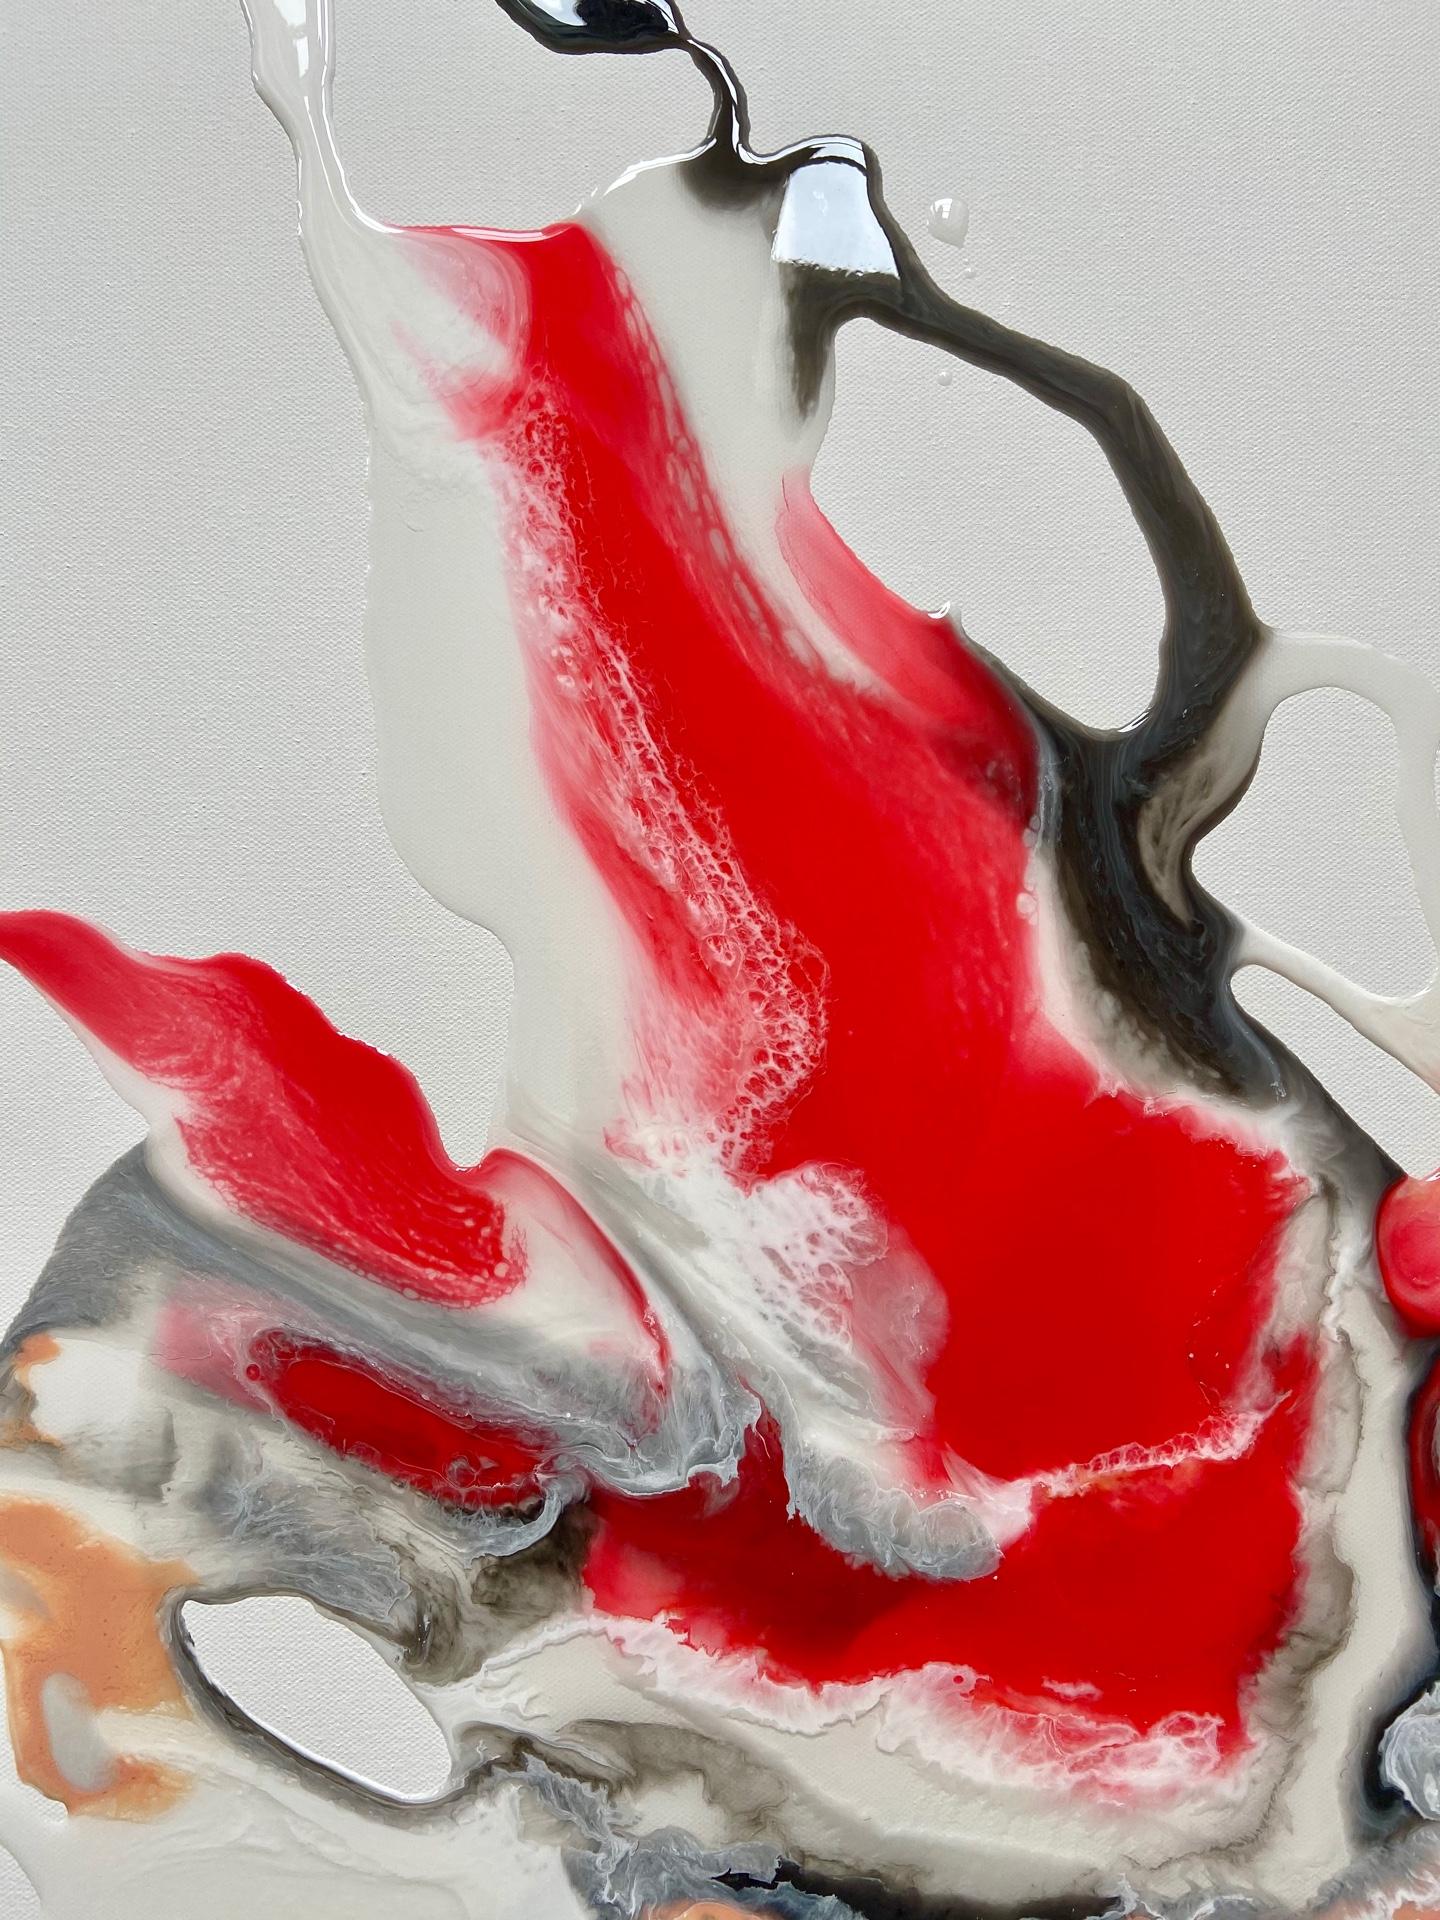 Man's Heart (Cœur humain) - peinture abstraite en rouge, noir, blanc, couleur pêche - Expressionnisme abstrait Painting par Lena Cher